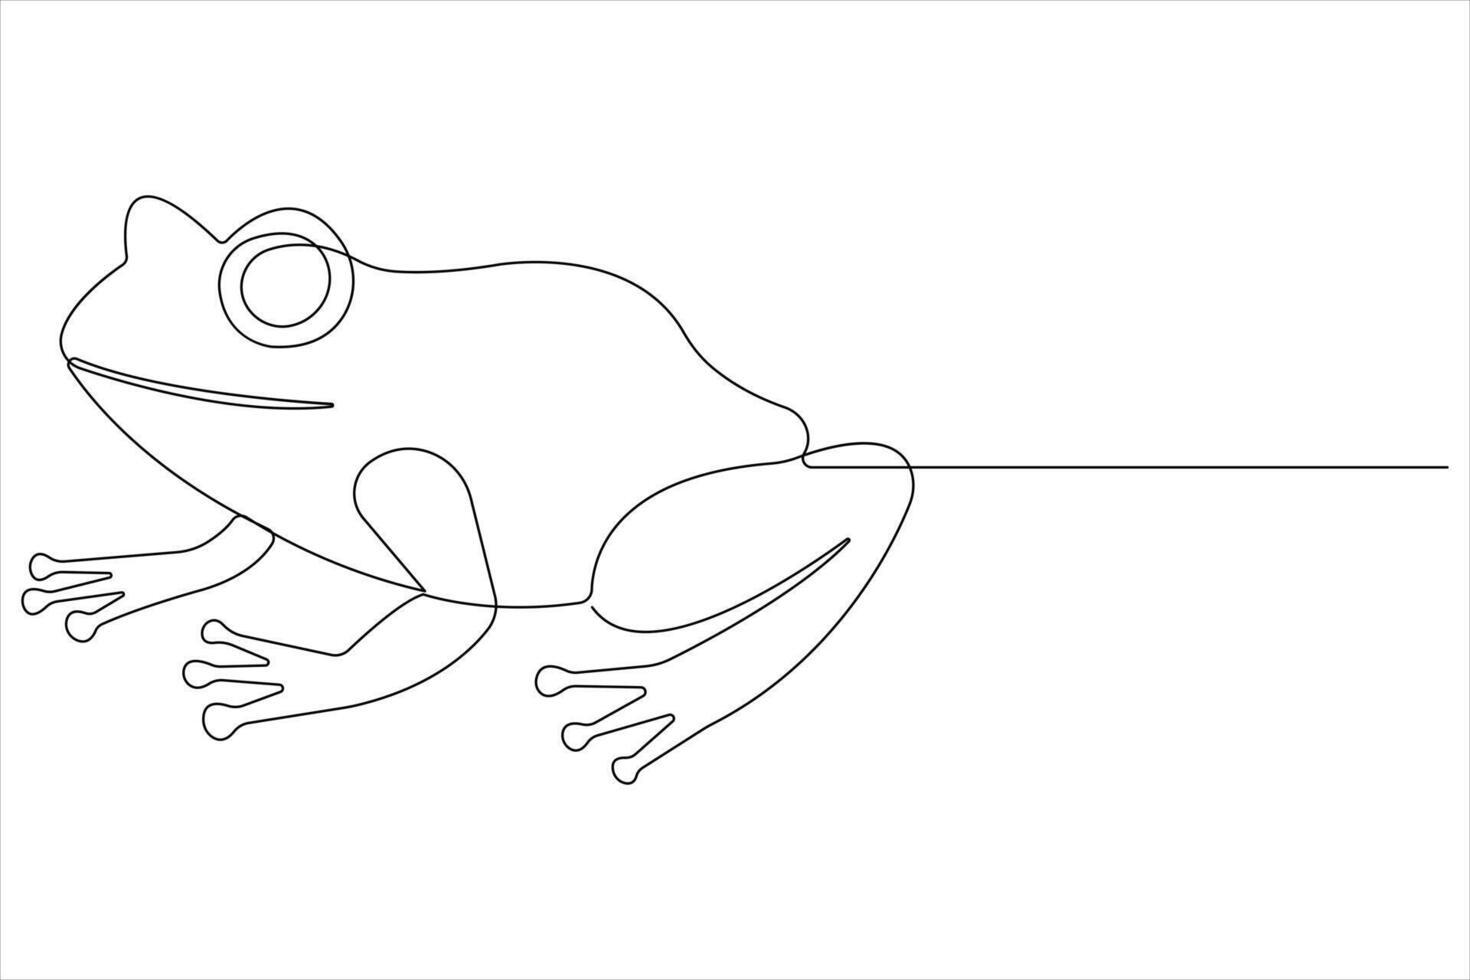 rana símbolo ilustración de mundo animal día continuo uno línea Arte vector